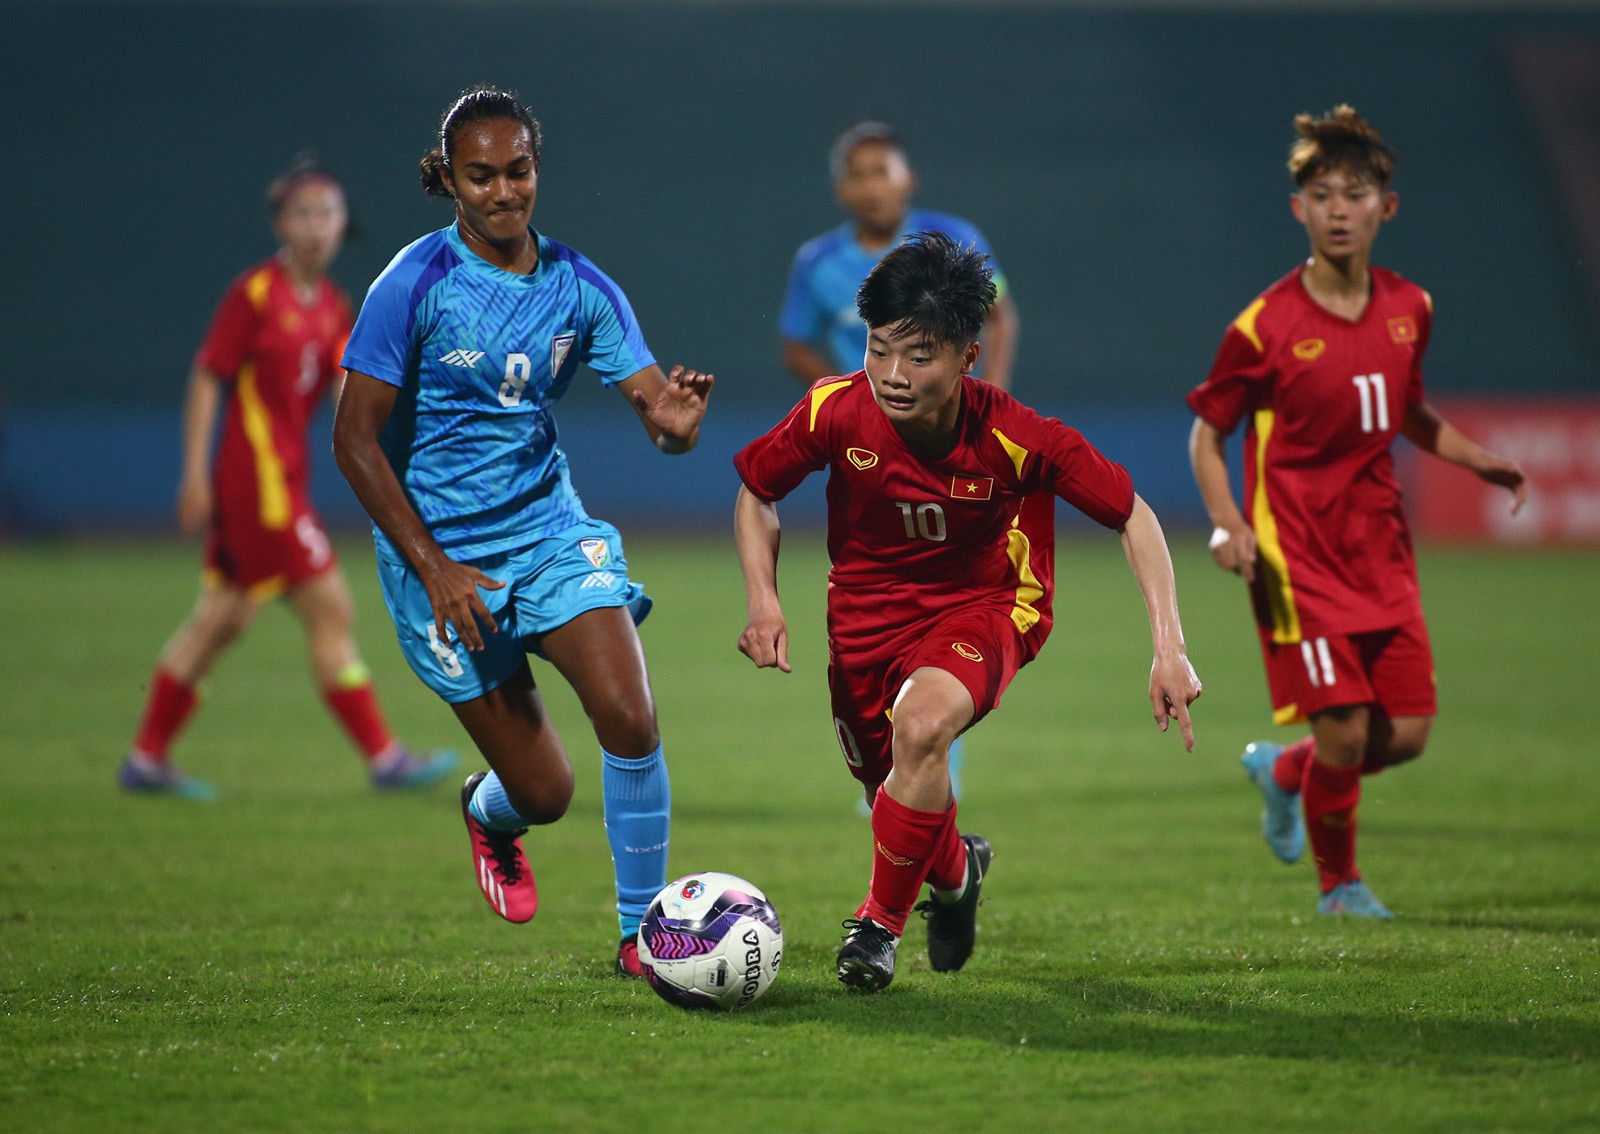 U20 nữ Việt Nam chính thức qua vòng bảng